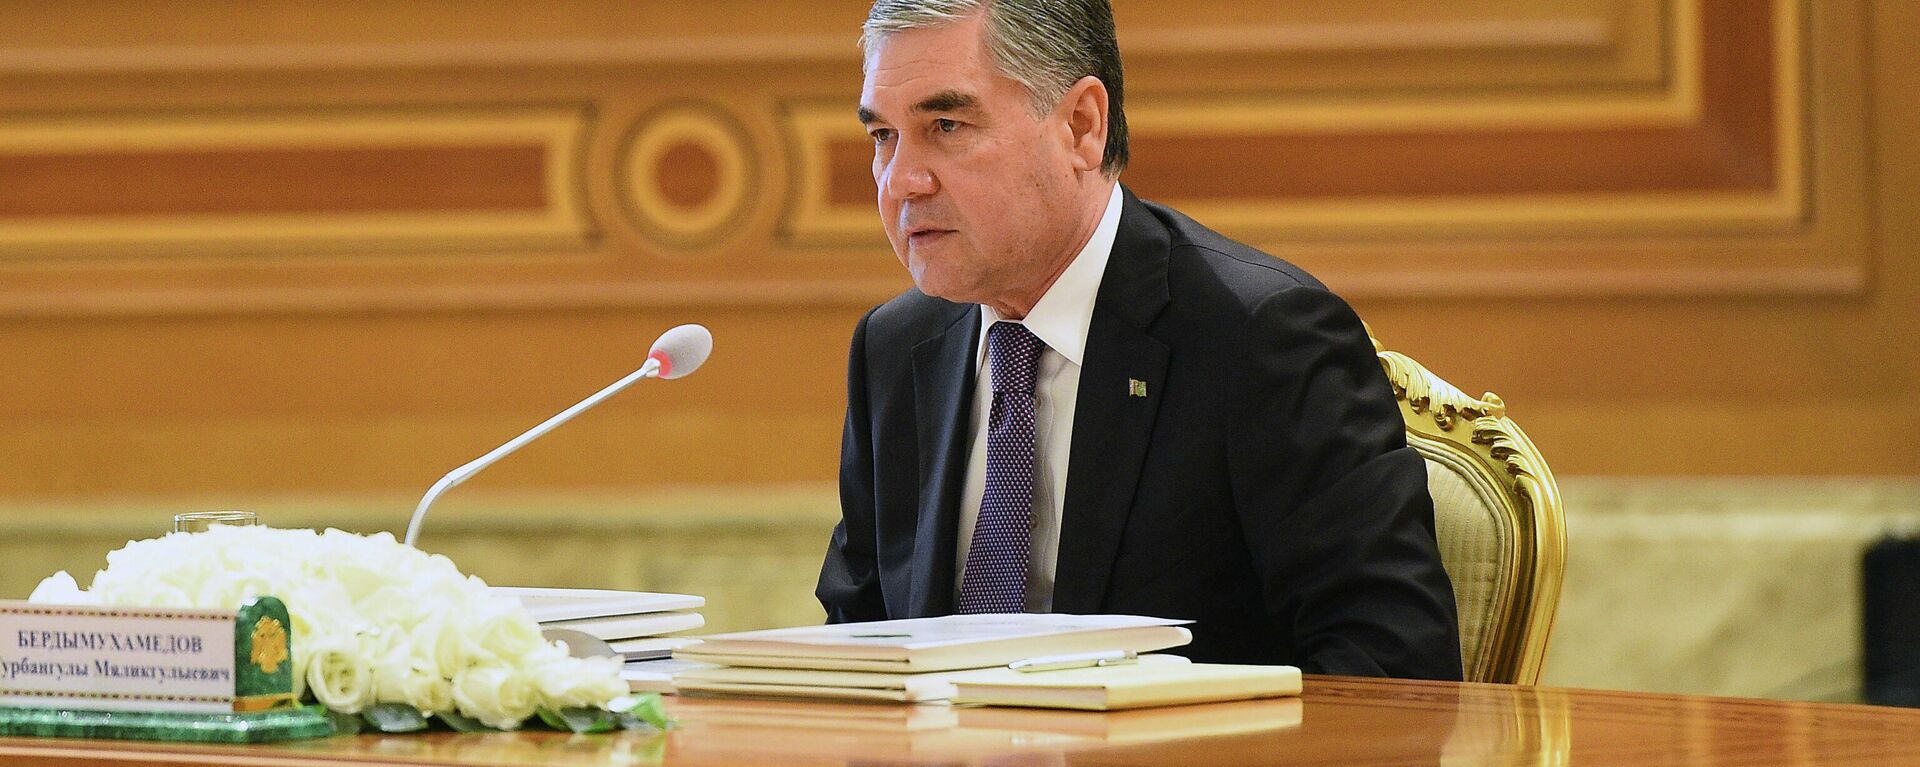 Президент Туркменистана Гурбангулы Бердымухамедов - Sputnik Таджикистан, 1920, 20.09.2021